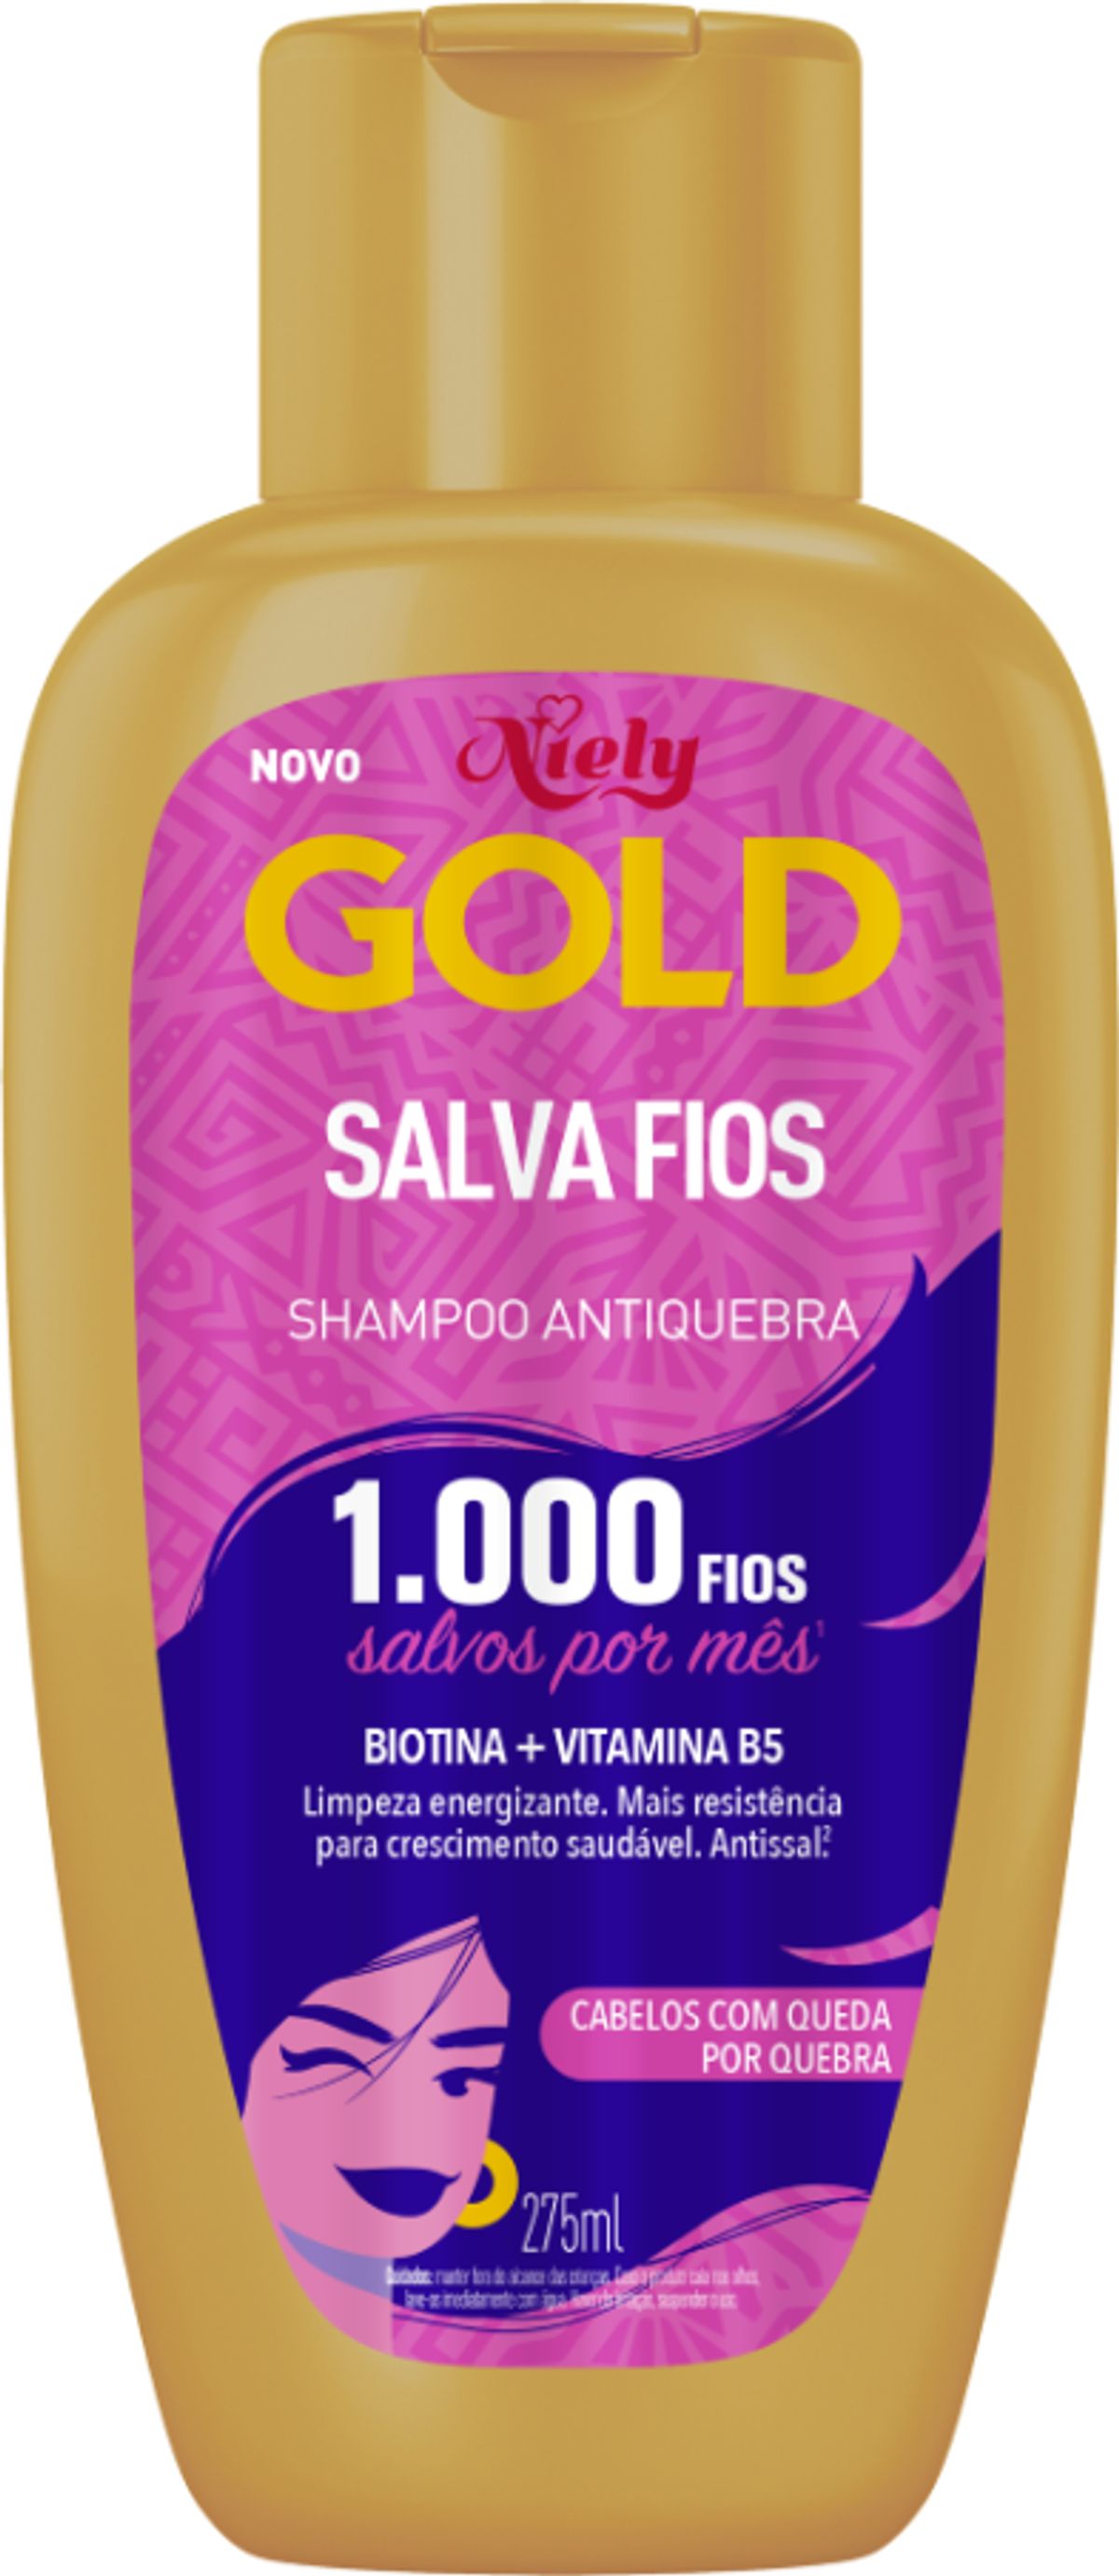 Shampoo Niely Gold Salva Fios 275ml